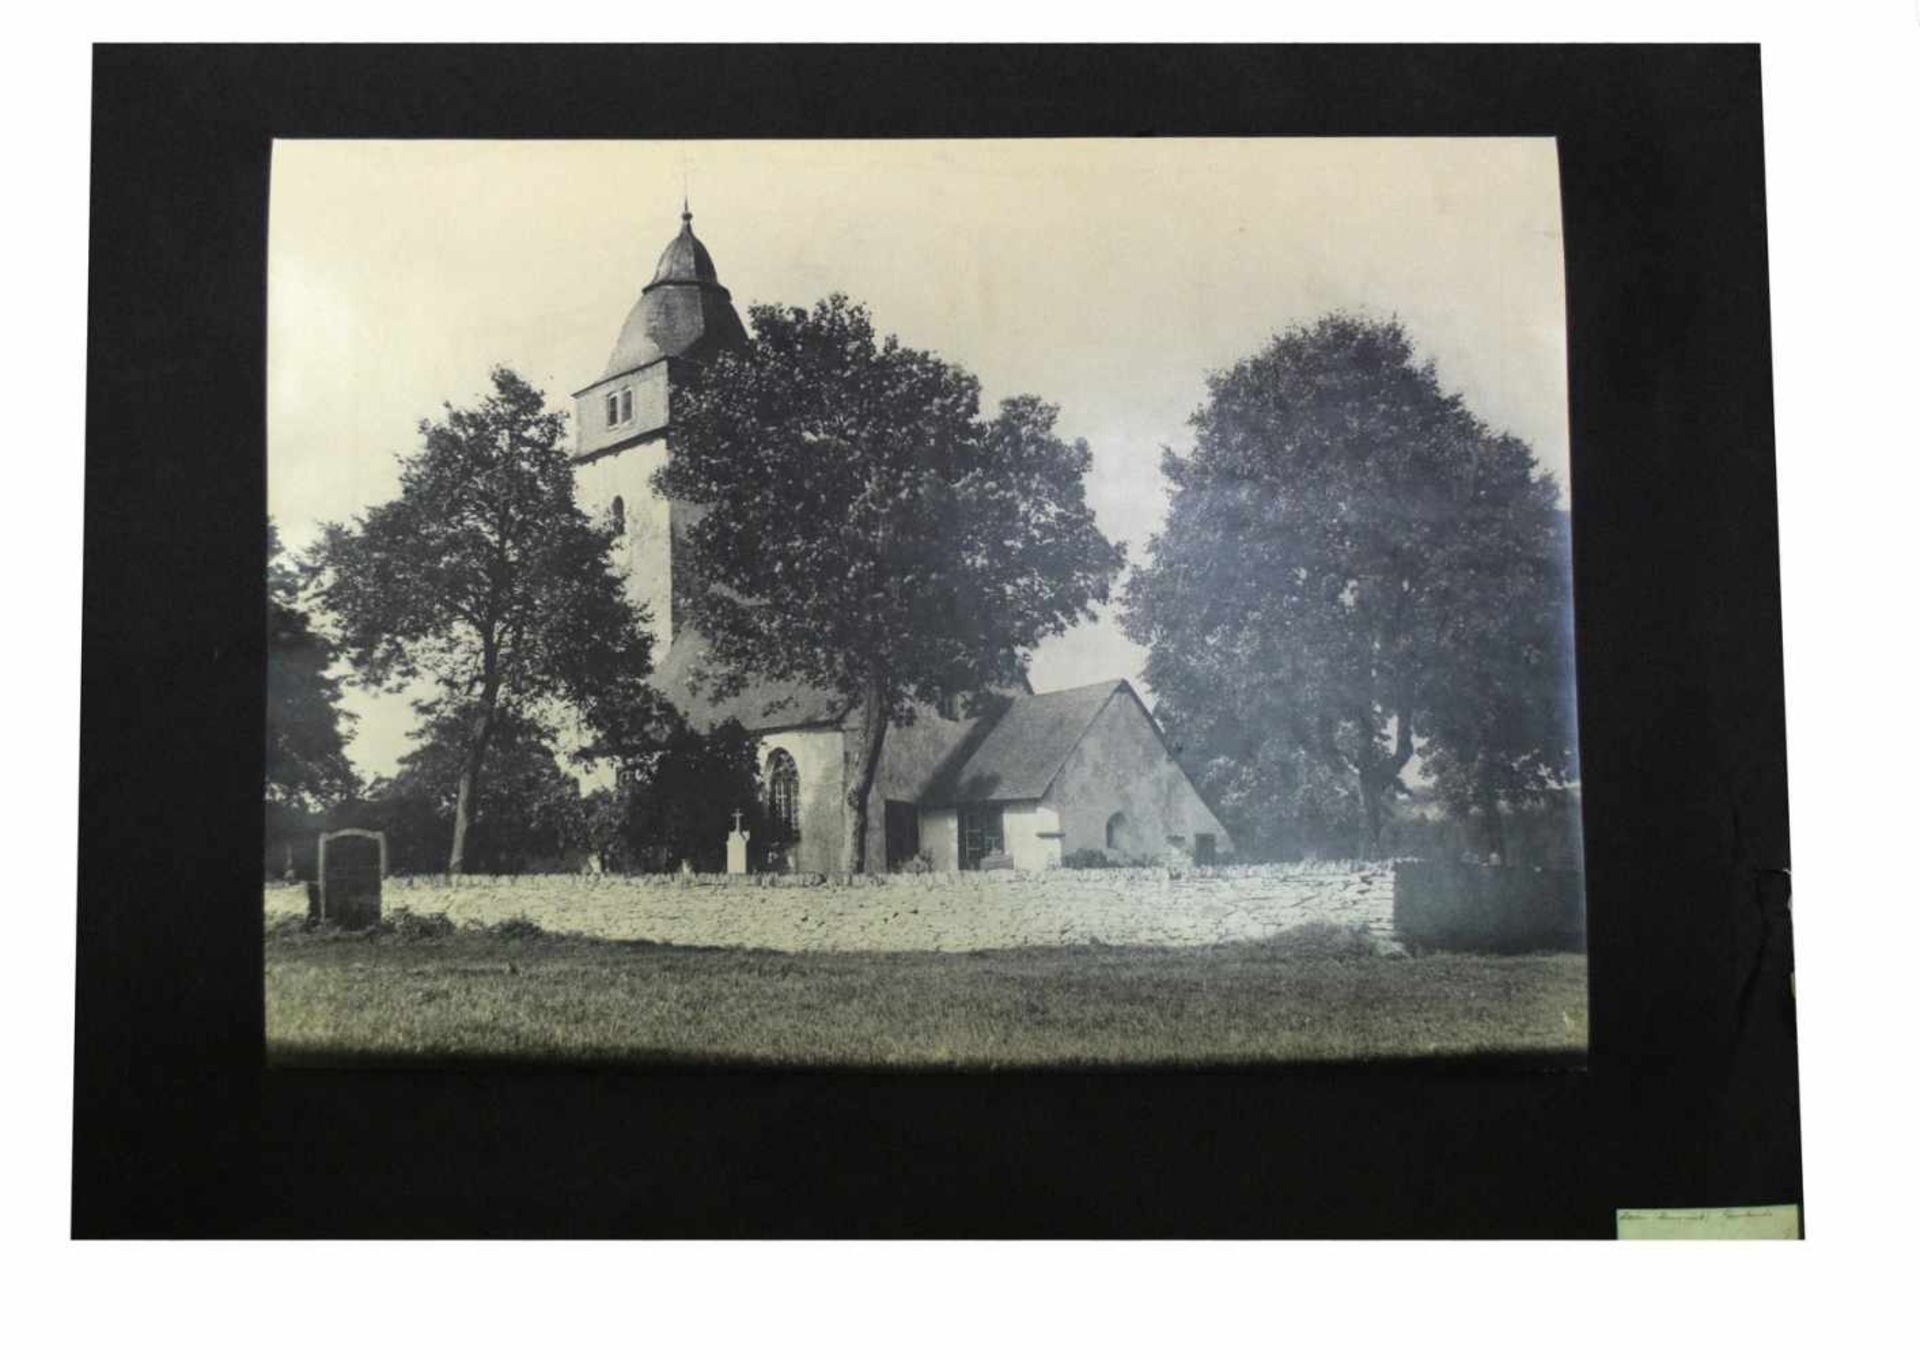 FotografiePfarrkirche in Hahn im Hunsrück, mit Friedhof, 52 X 75 cm, um 1900